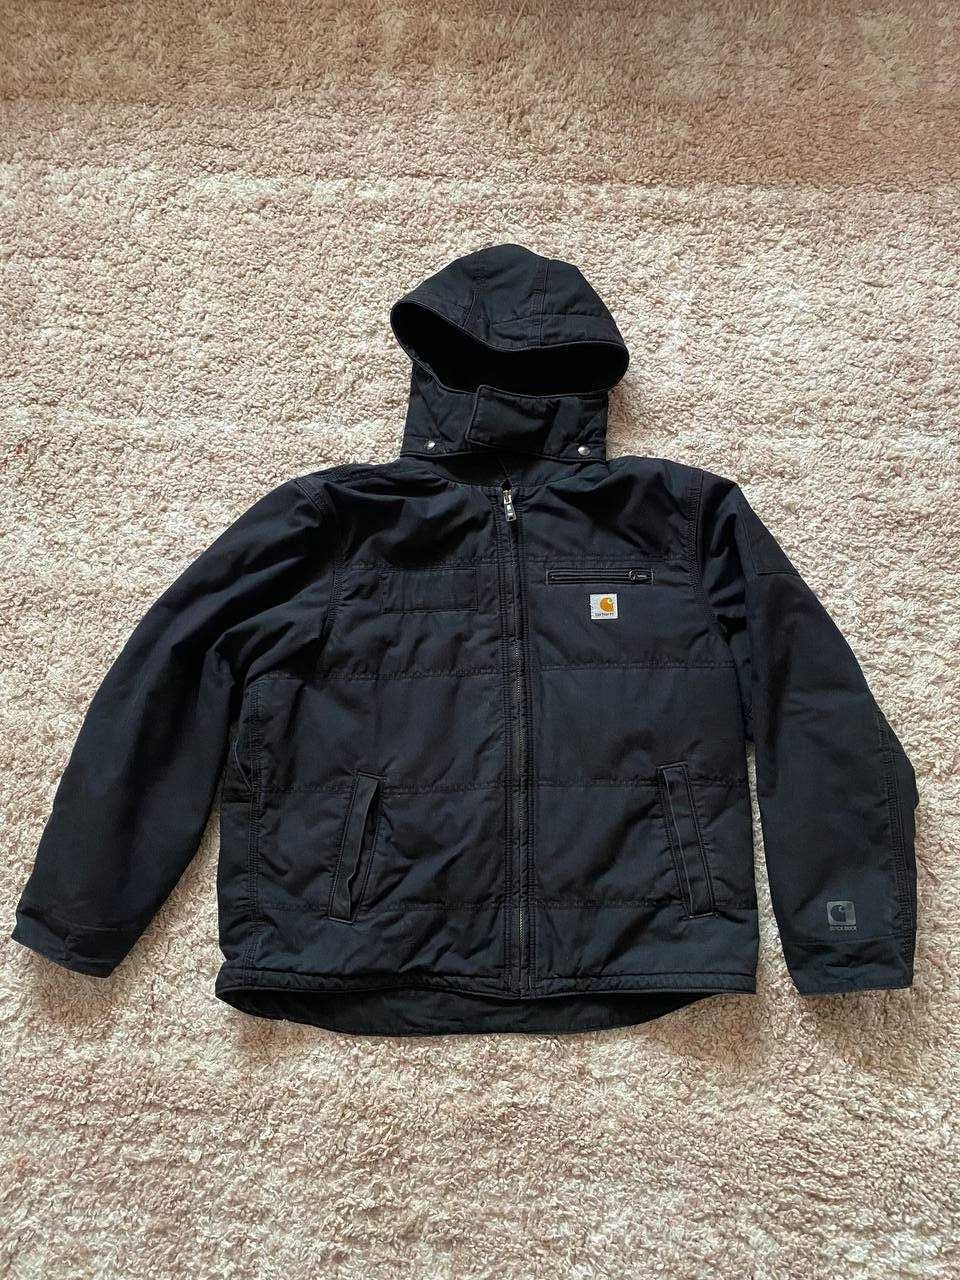 Carhartt wip jacket vintage куртка кархарт xl